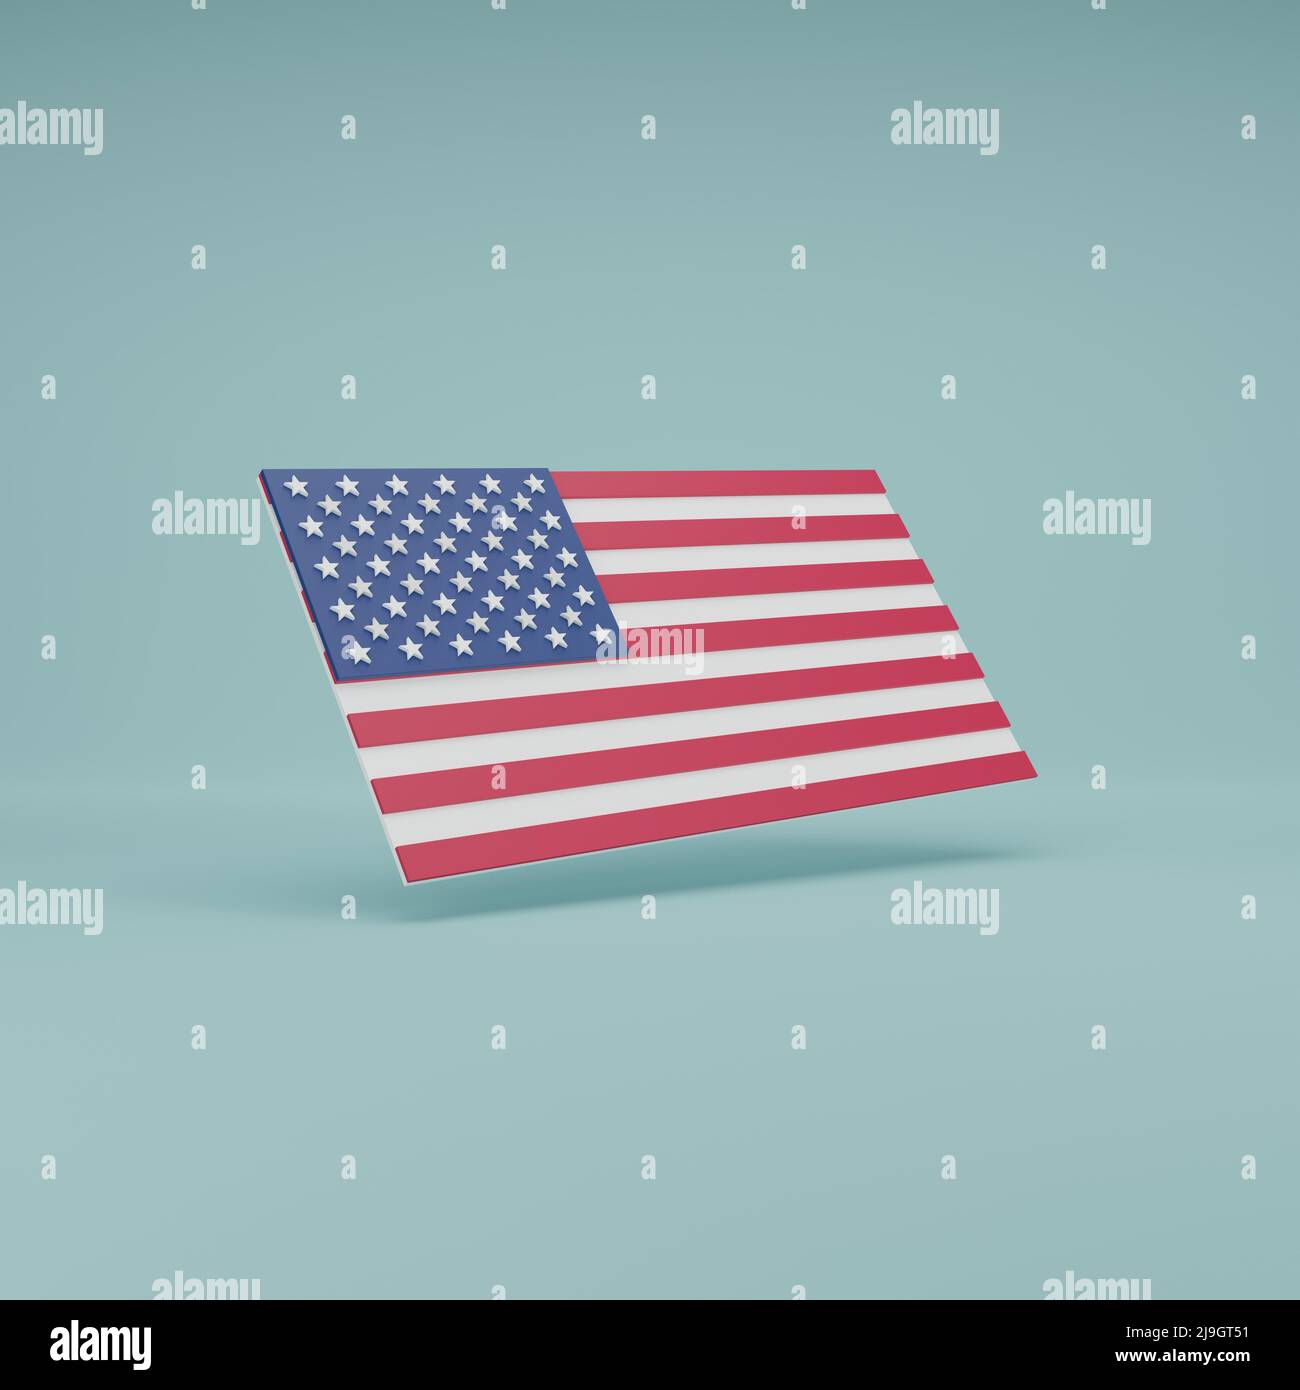 Drapeau national minimal des États-Unis d'Amérique avec 50 étoiles et 13 bandes horizontales alternées 3D en faisant l'illustration Banque D'Images